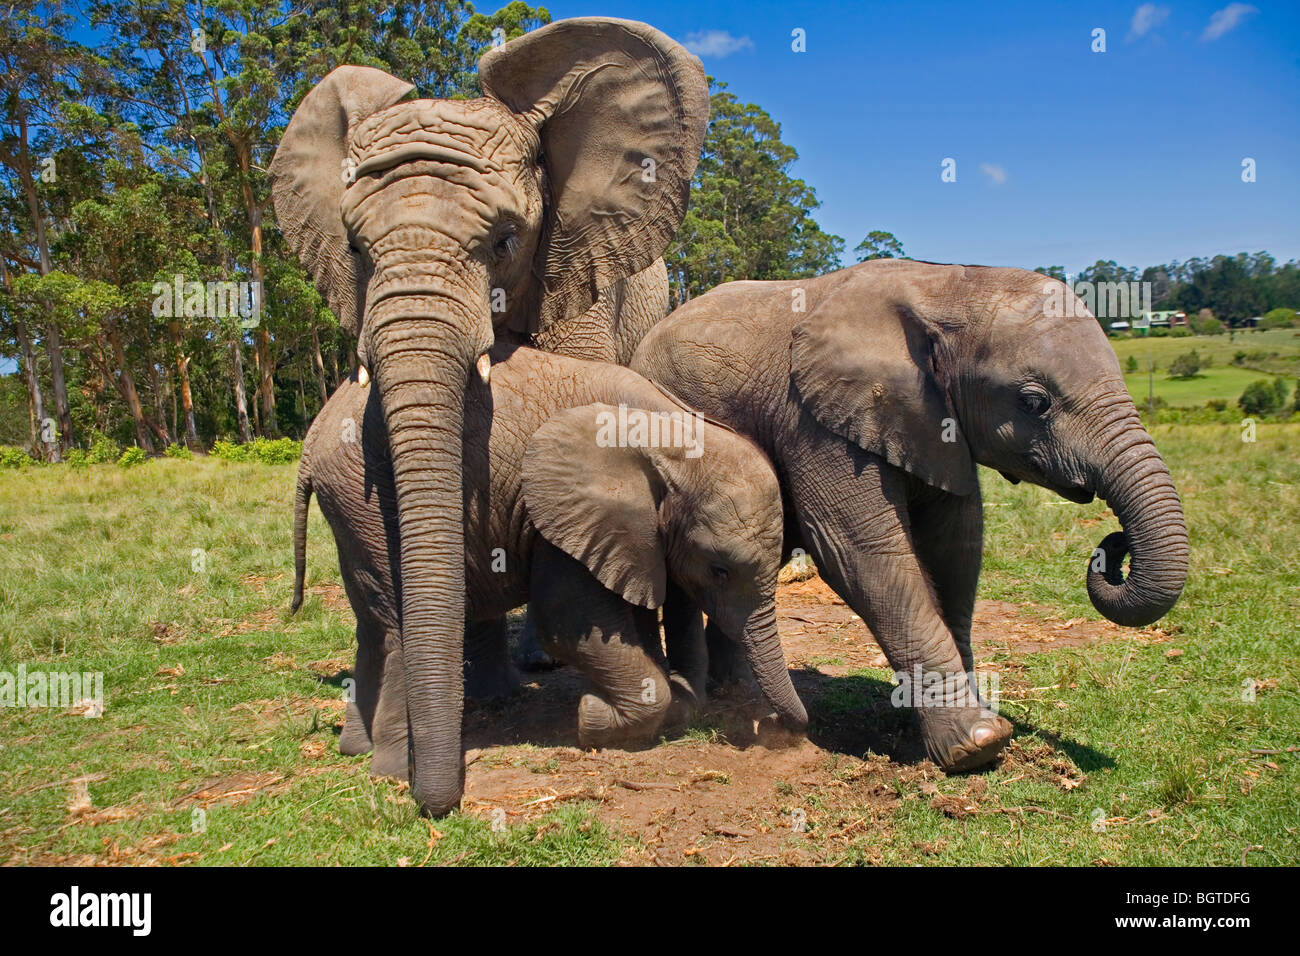 Les éléphants jouant à Knysna Elephant Park, Western Cape , Afrique du Sud Banque D'Images